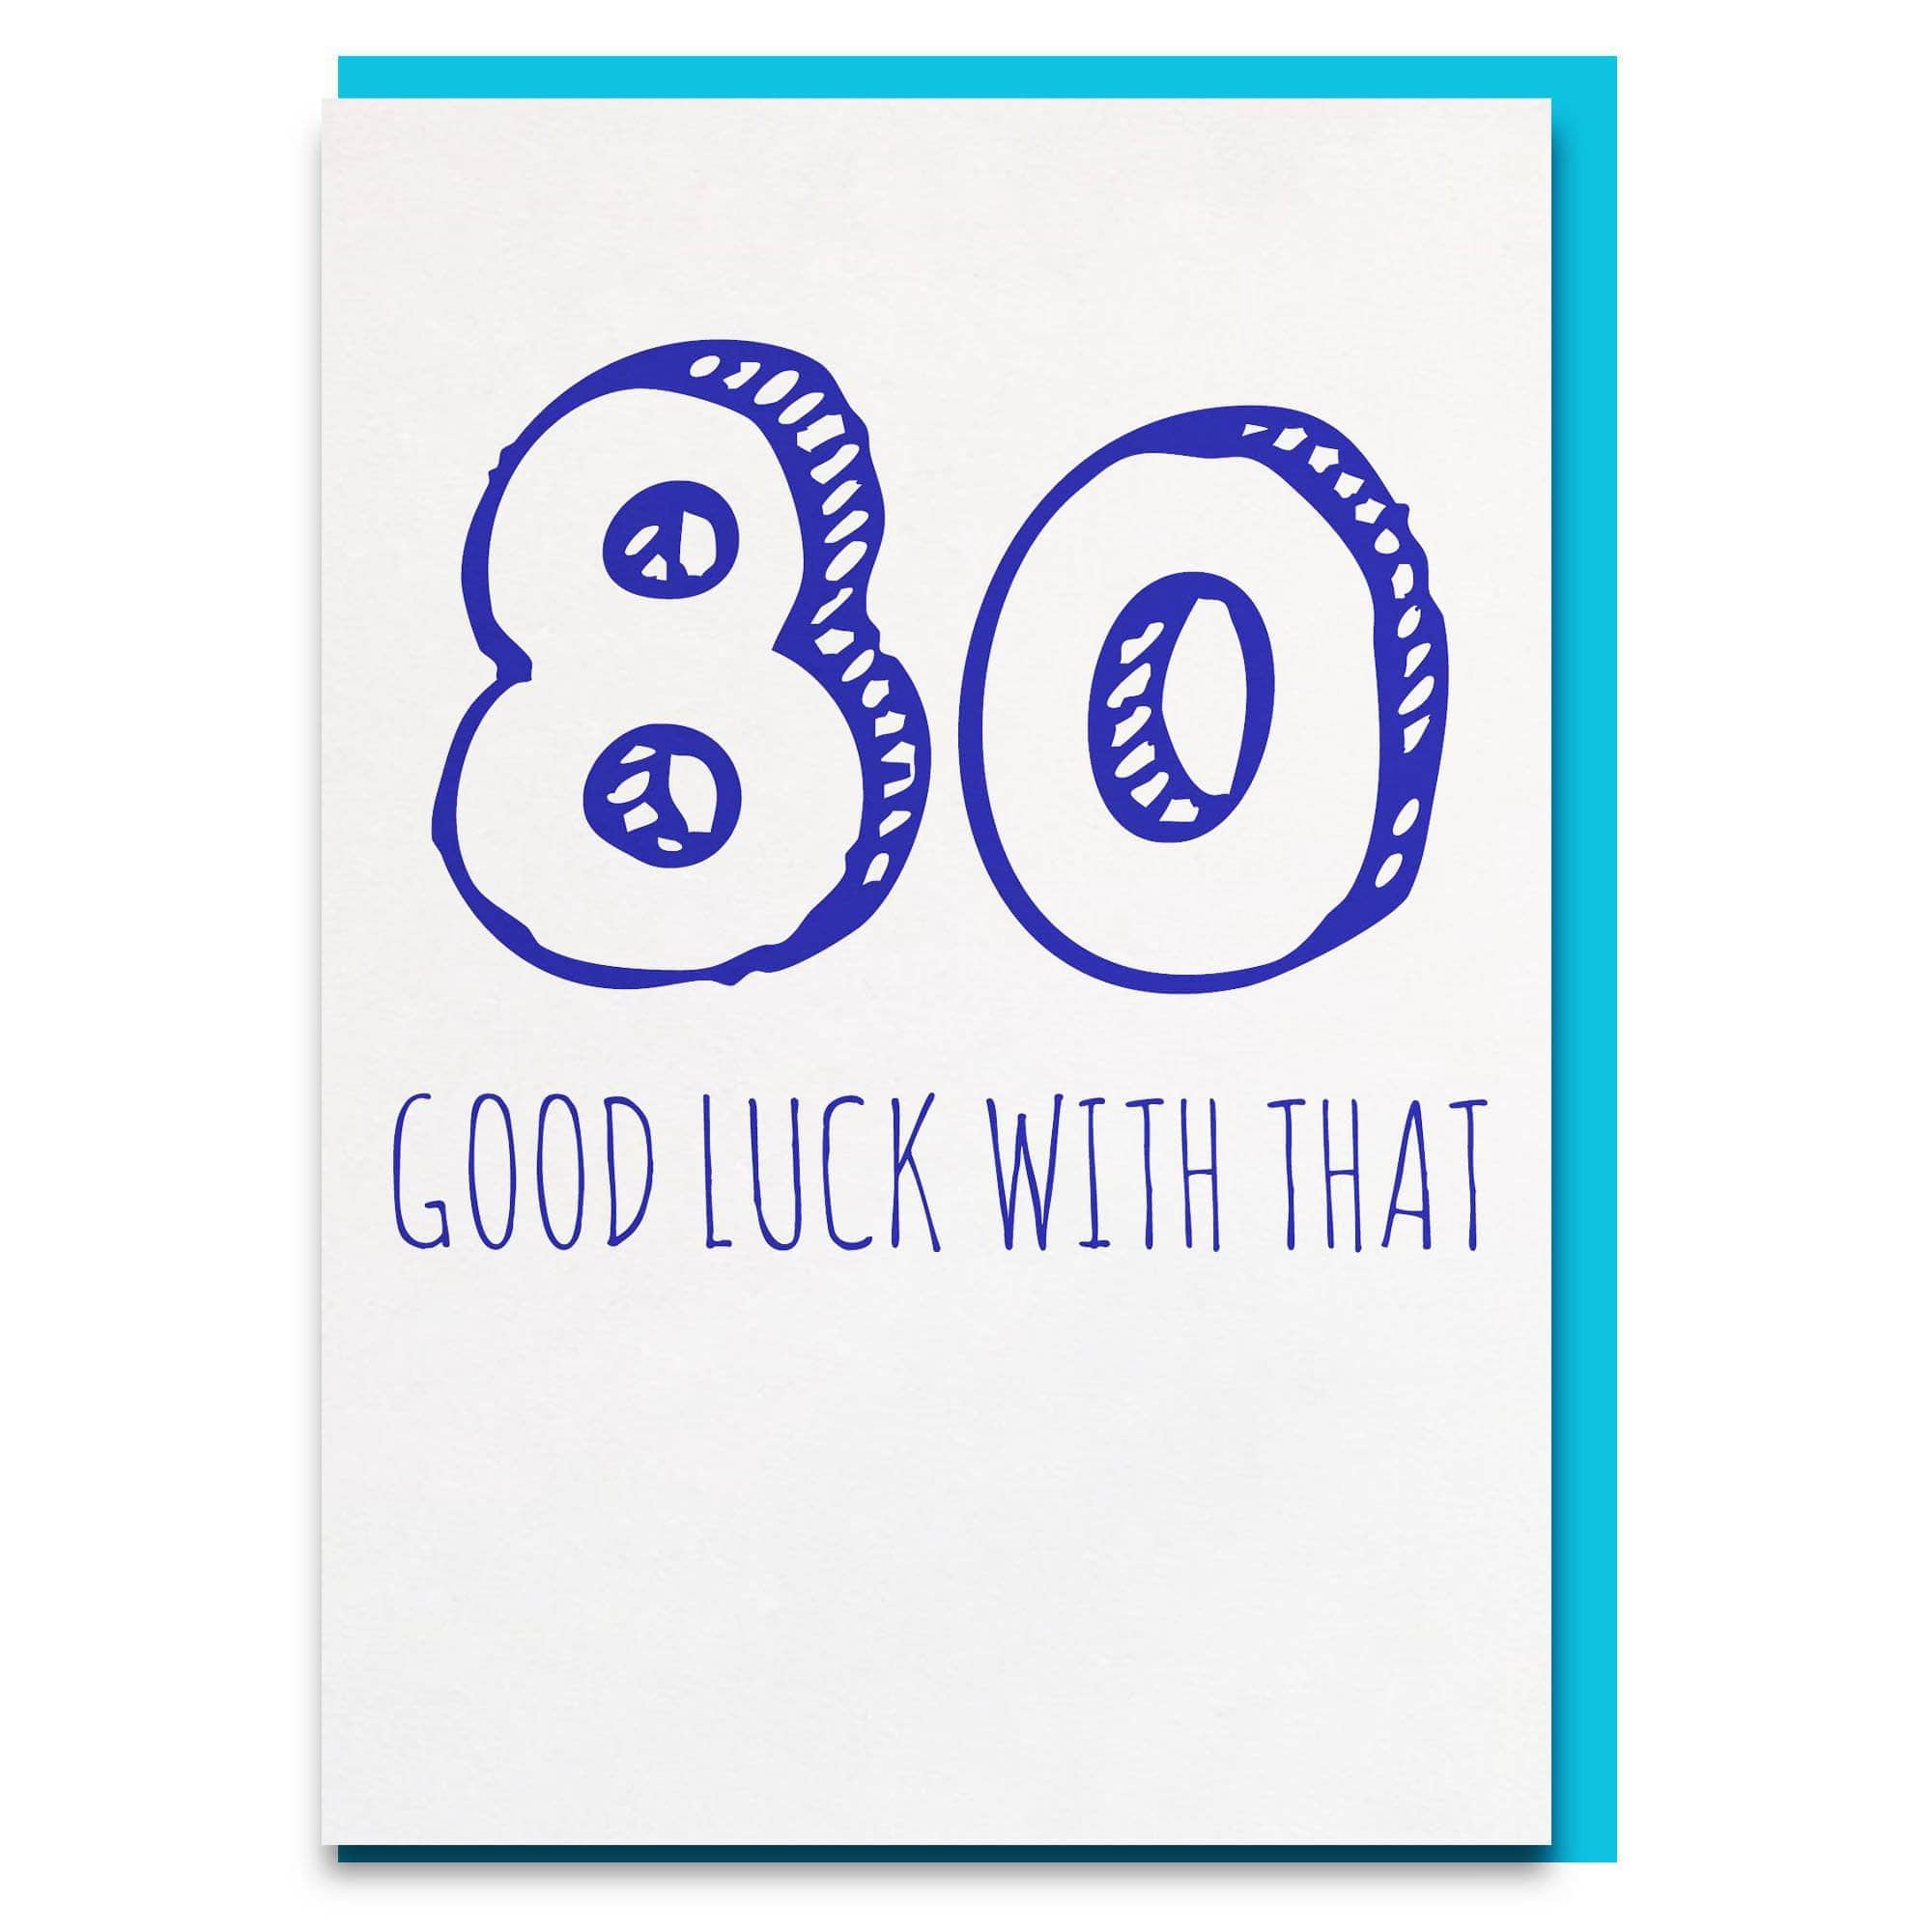 80 Good luck